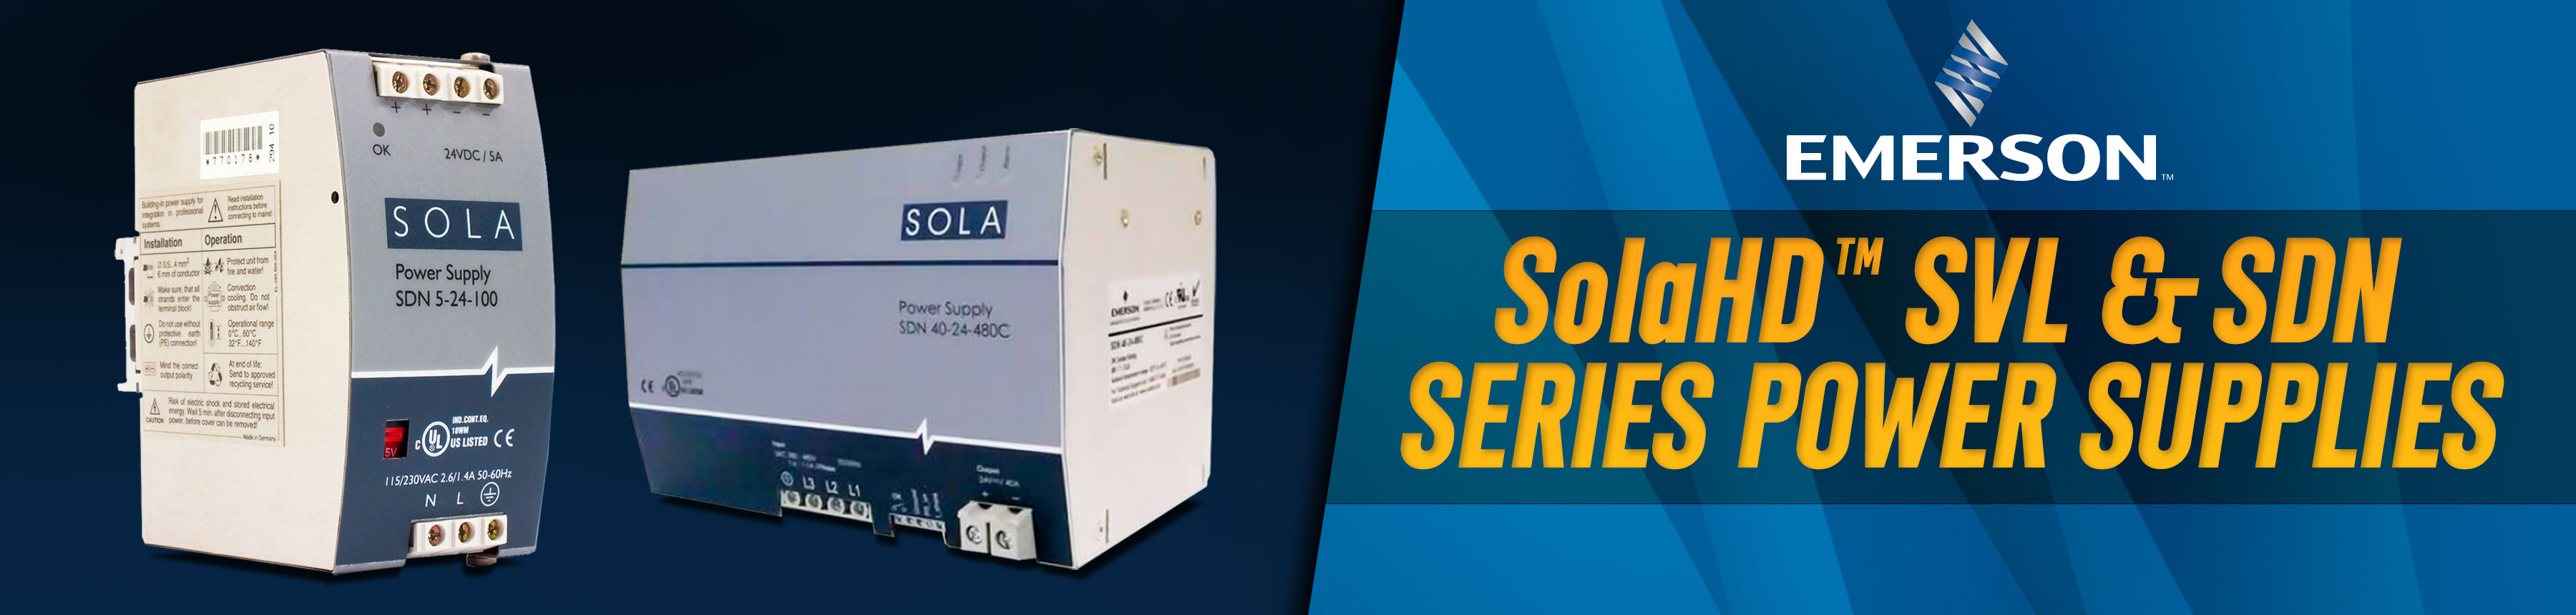 SolaHD SVL & SDN Power Supplies